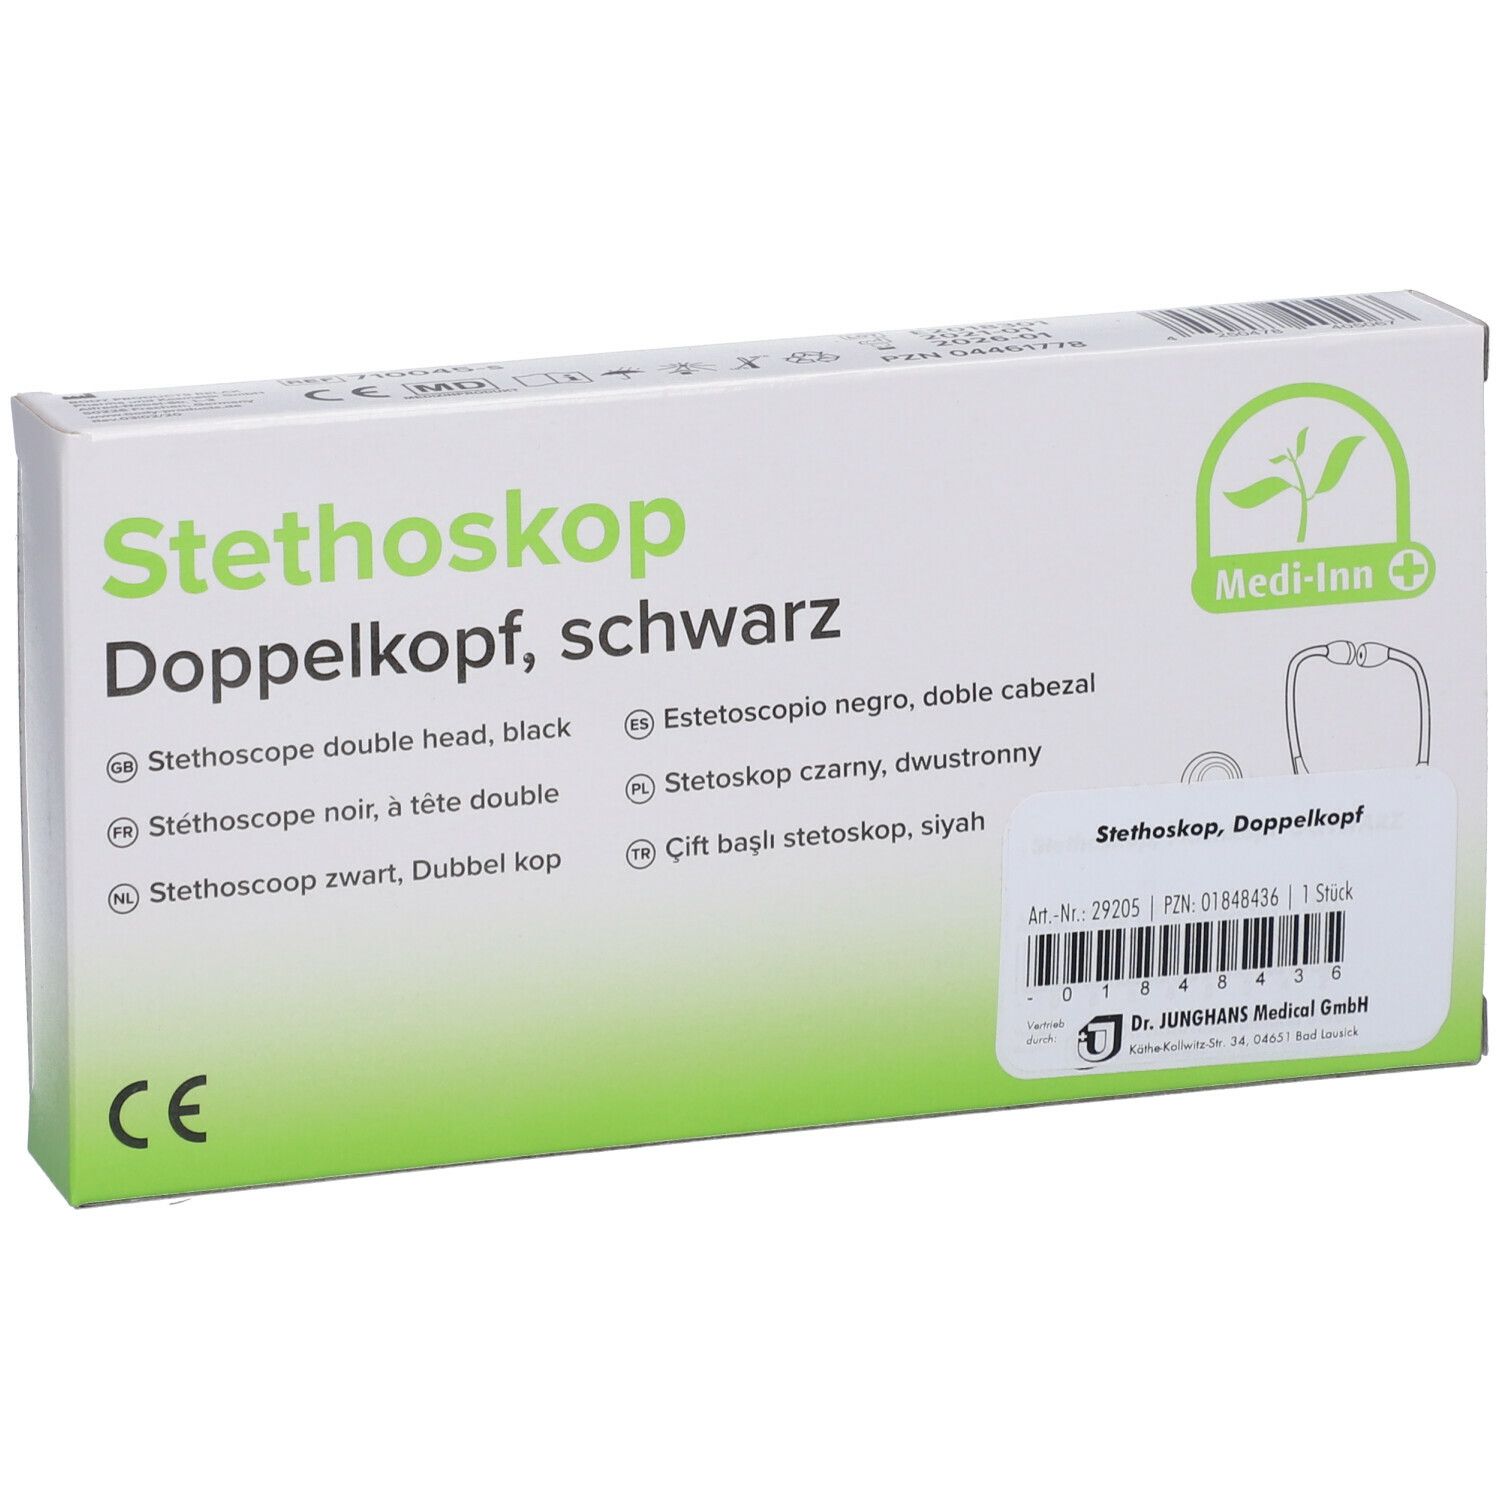 Stethoskop Doppelkopf 1 St - SHOP APOTHEKE